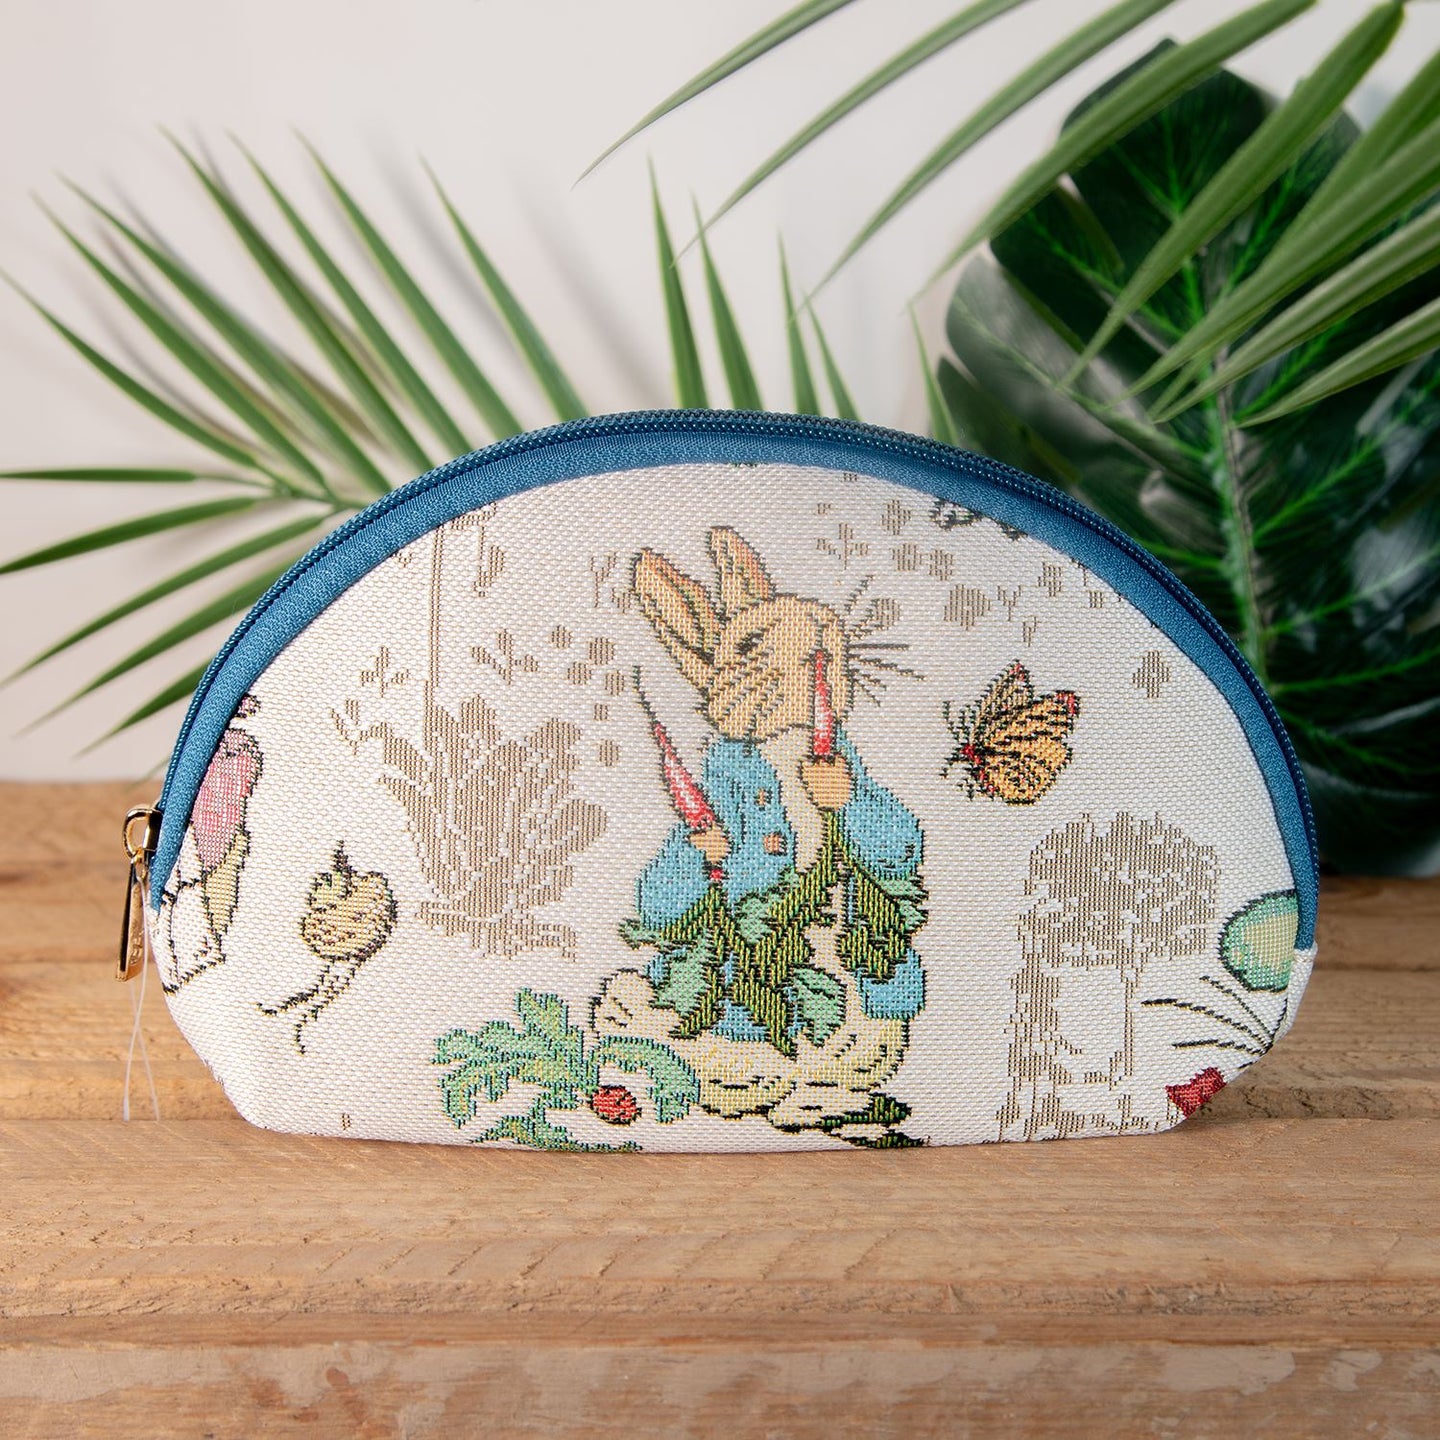 Signare Beatrix Potter Peter Rabbit Tapestry Cosmetics Bag